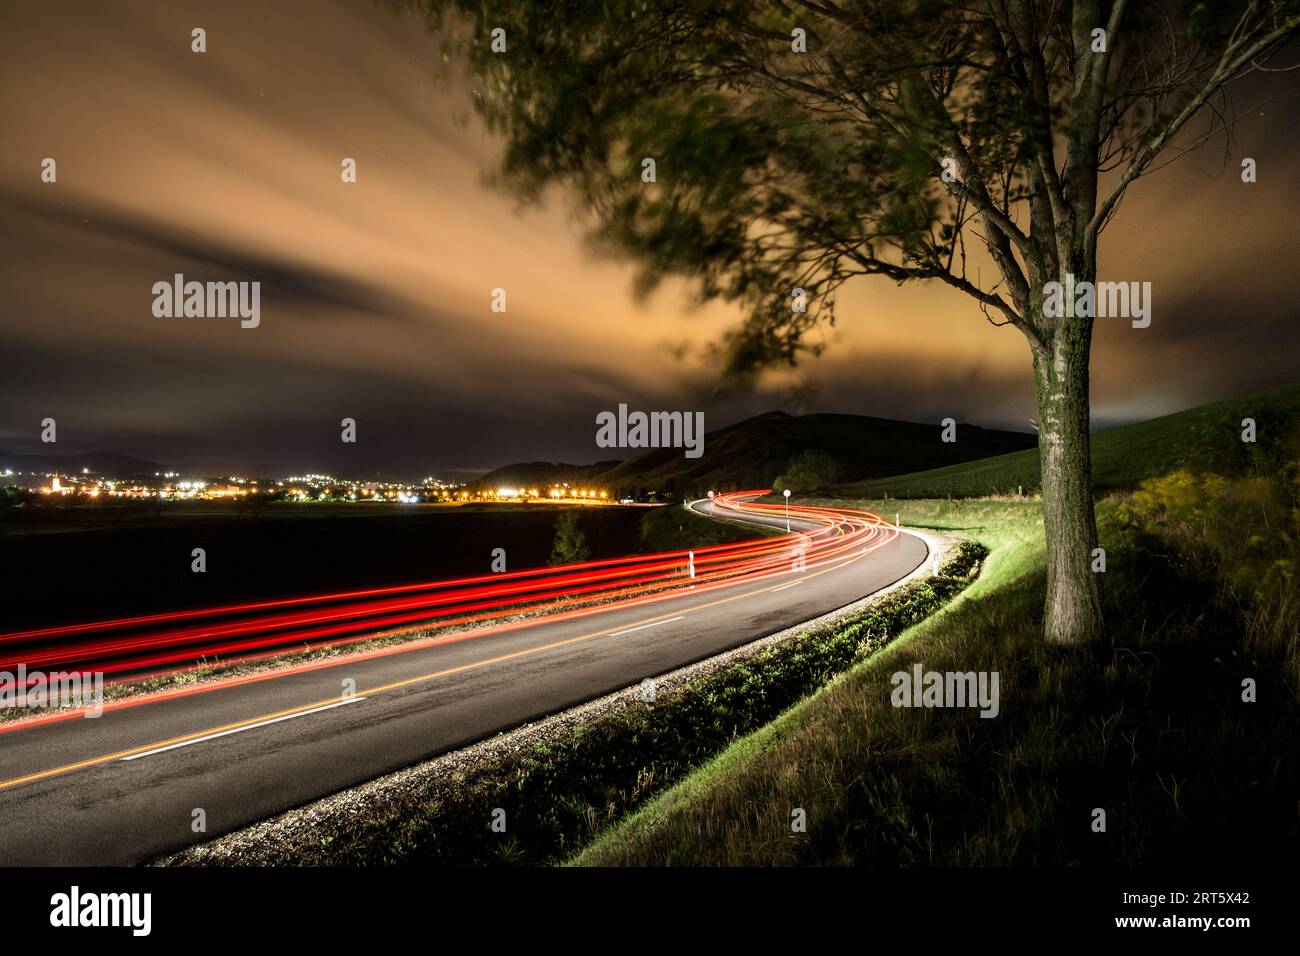 Ampellinie auf der Straße bei Nacht. Stockfoto